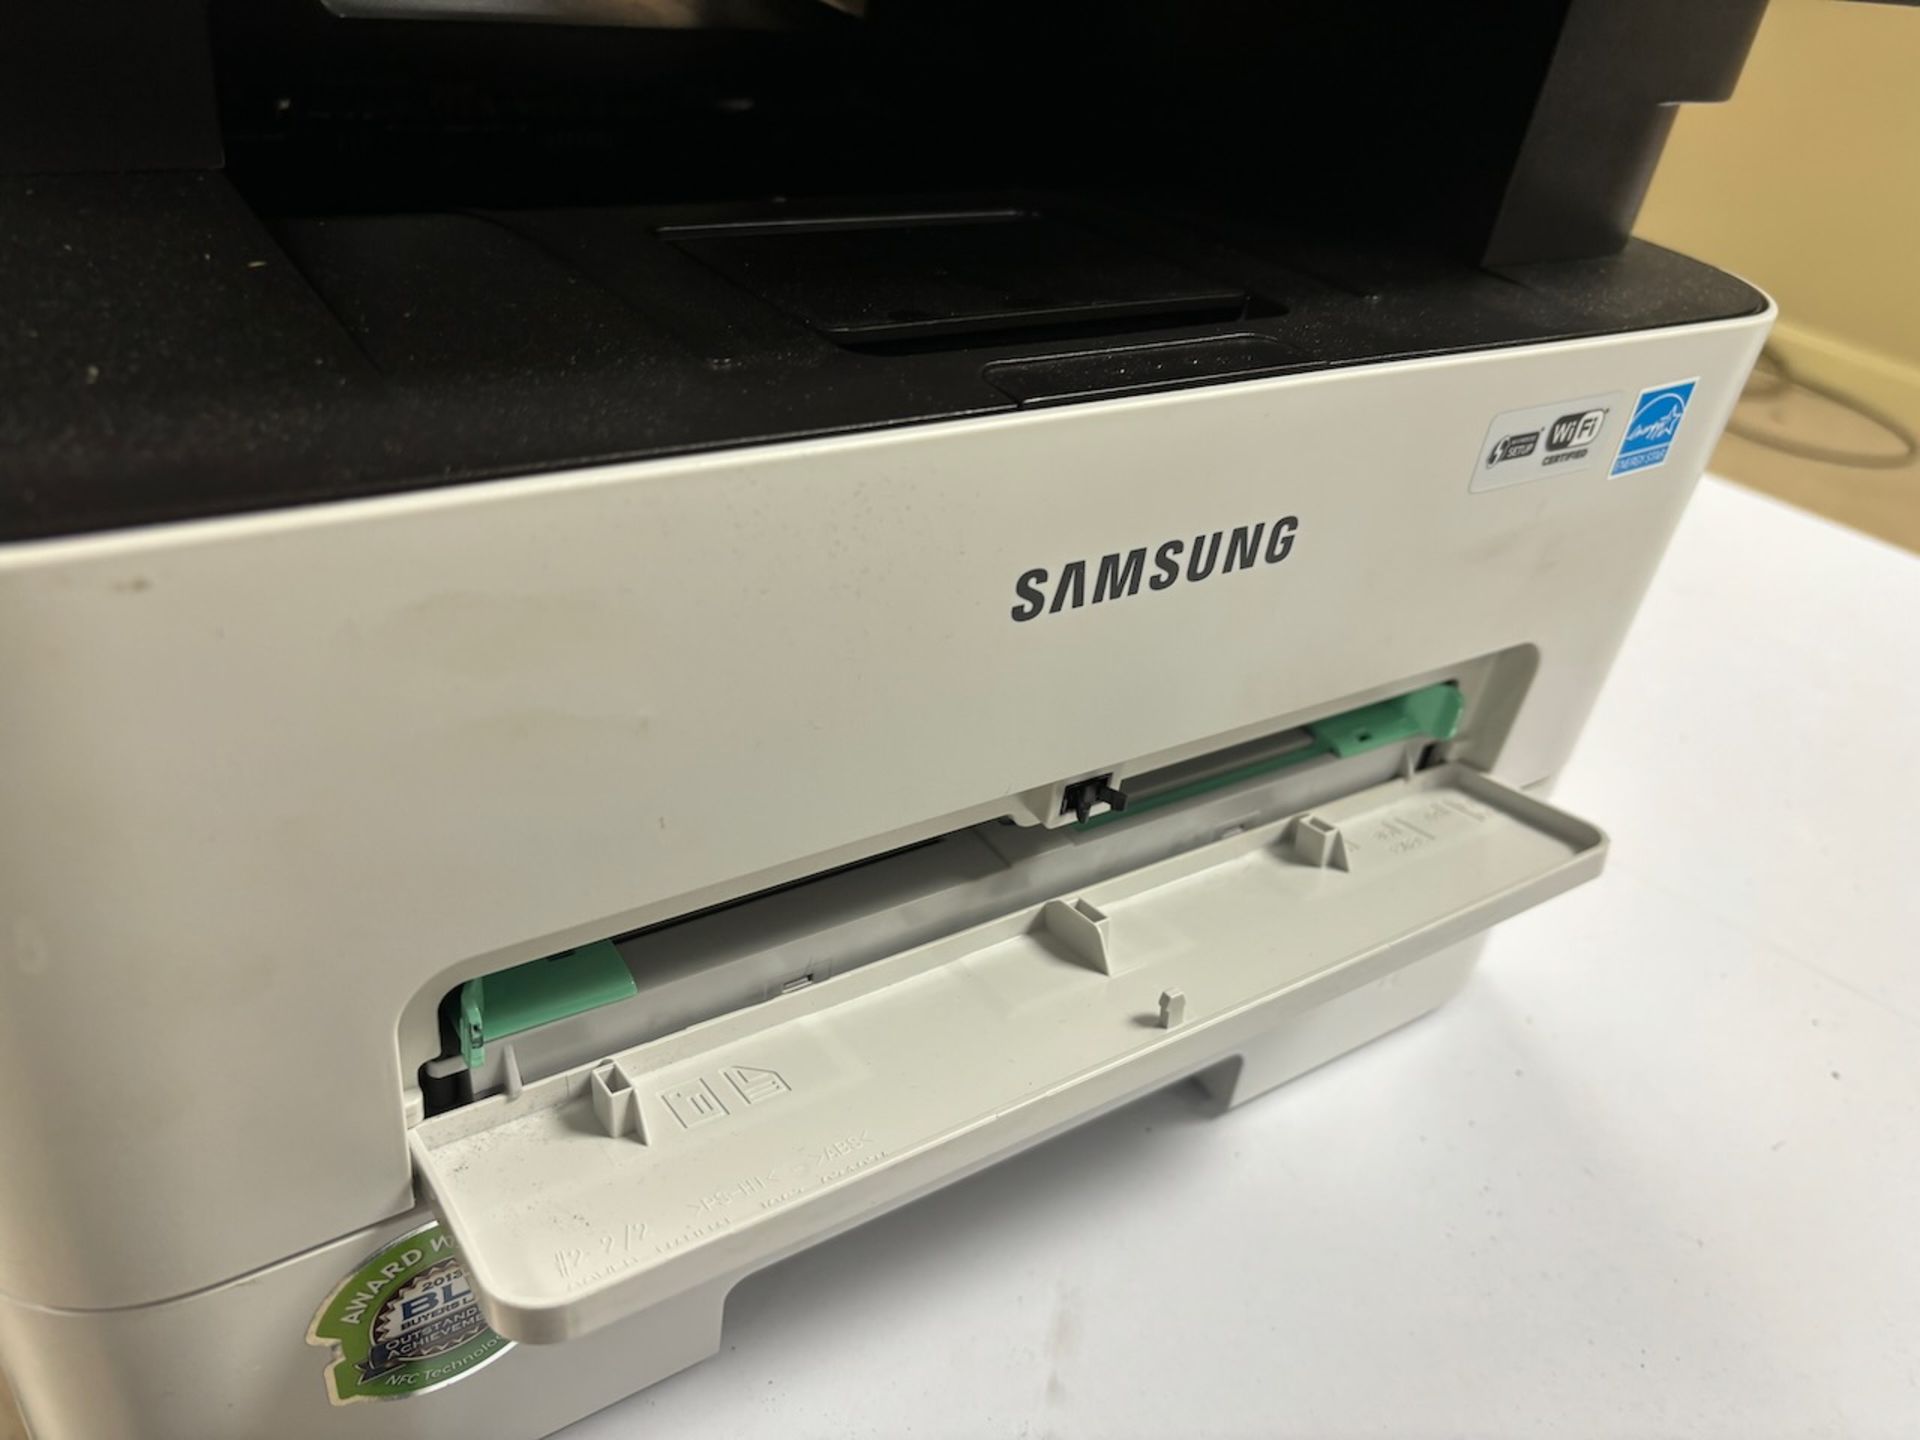 Samsung multifunction laser printer - Image 3 of 4